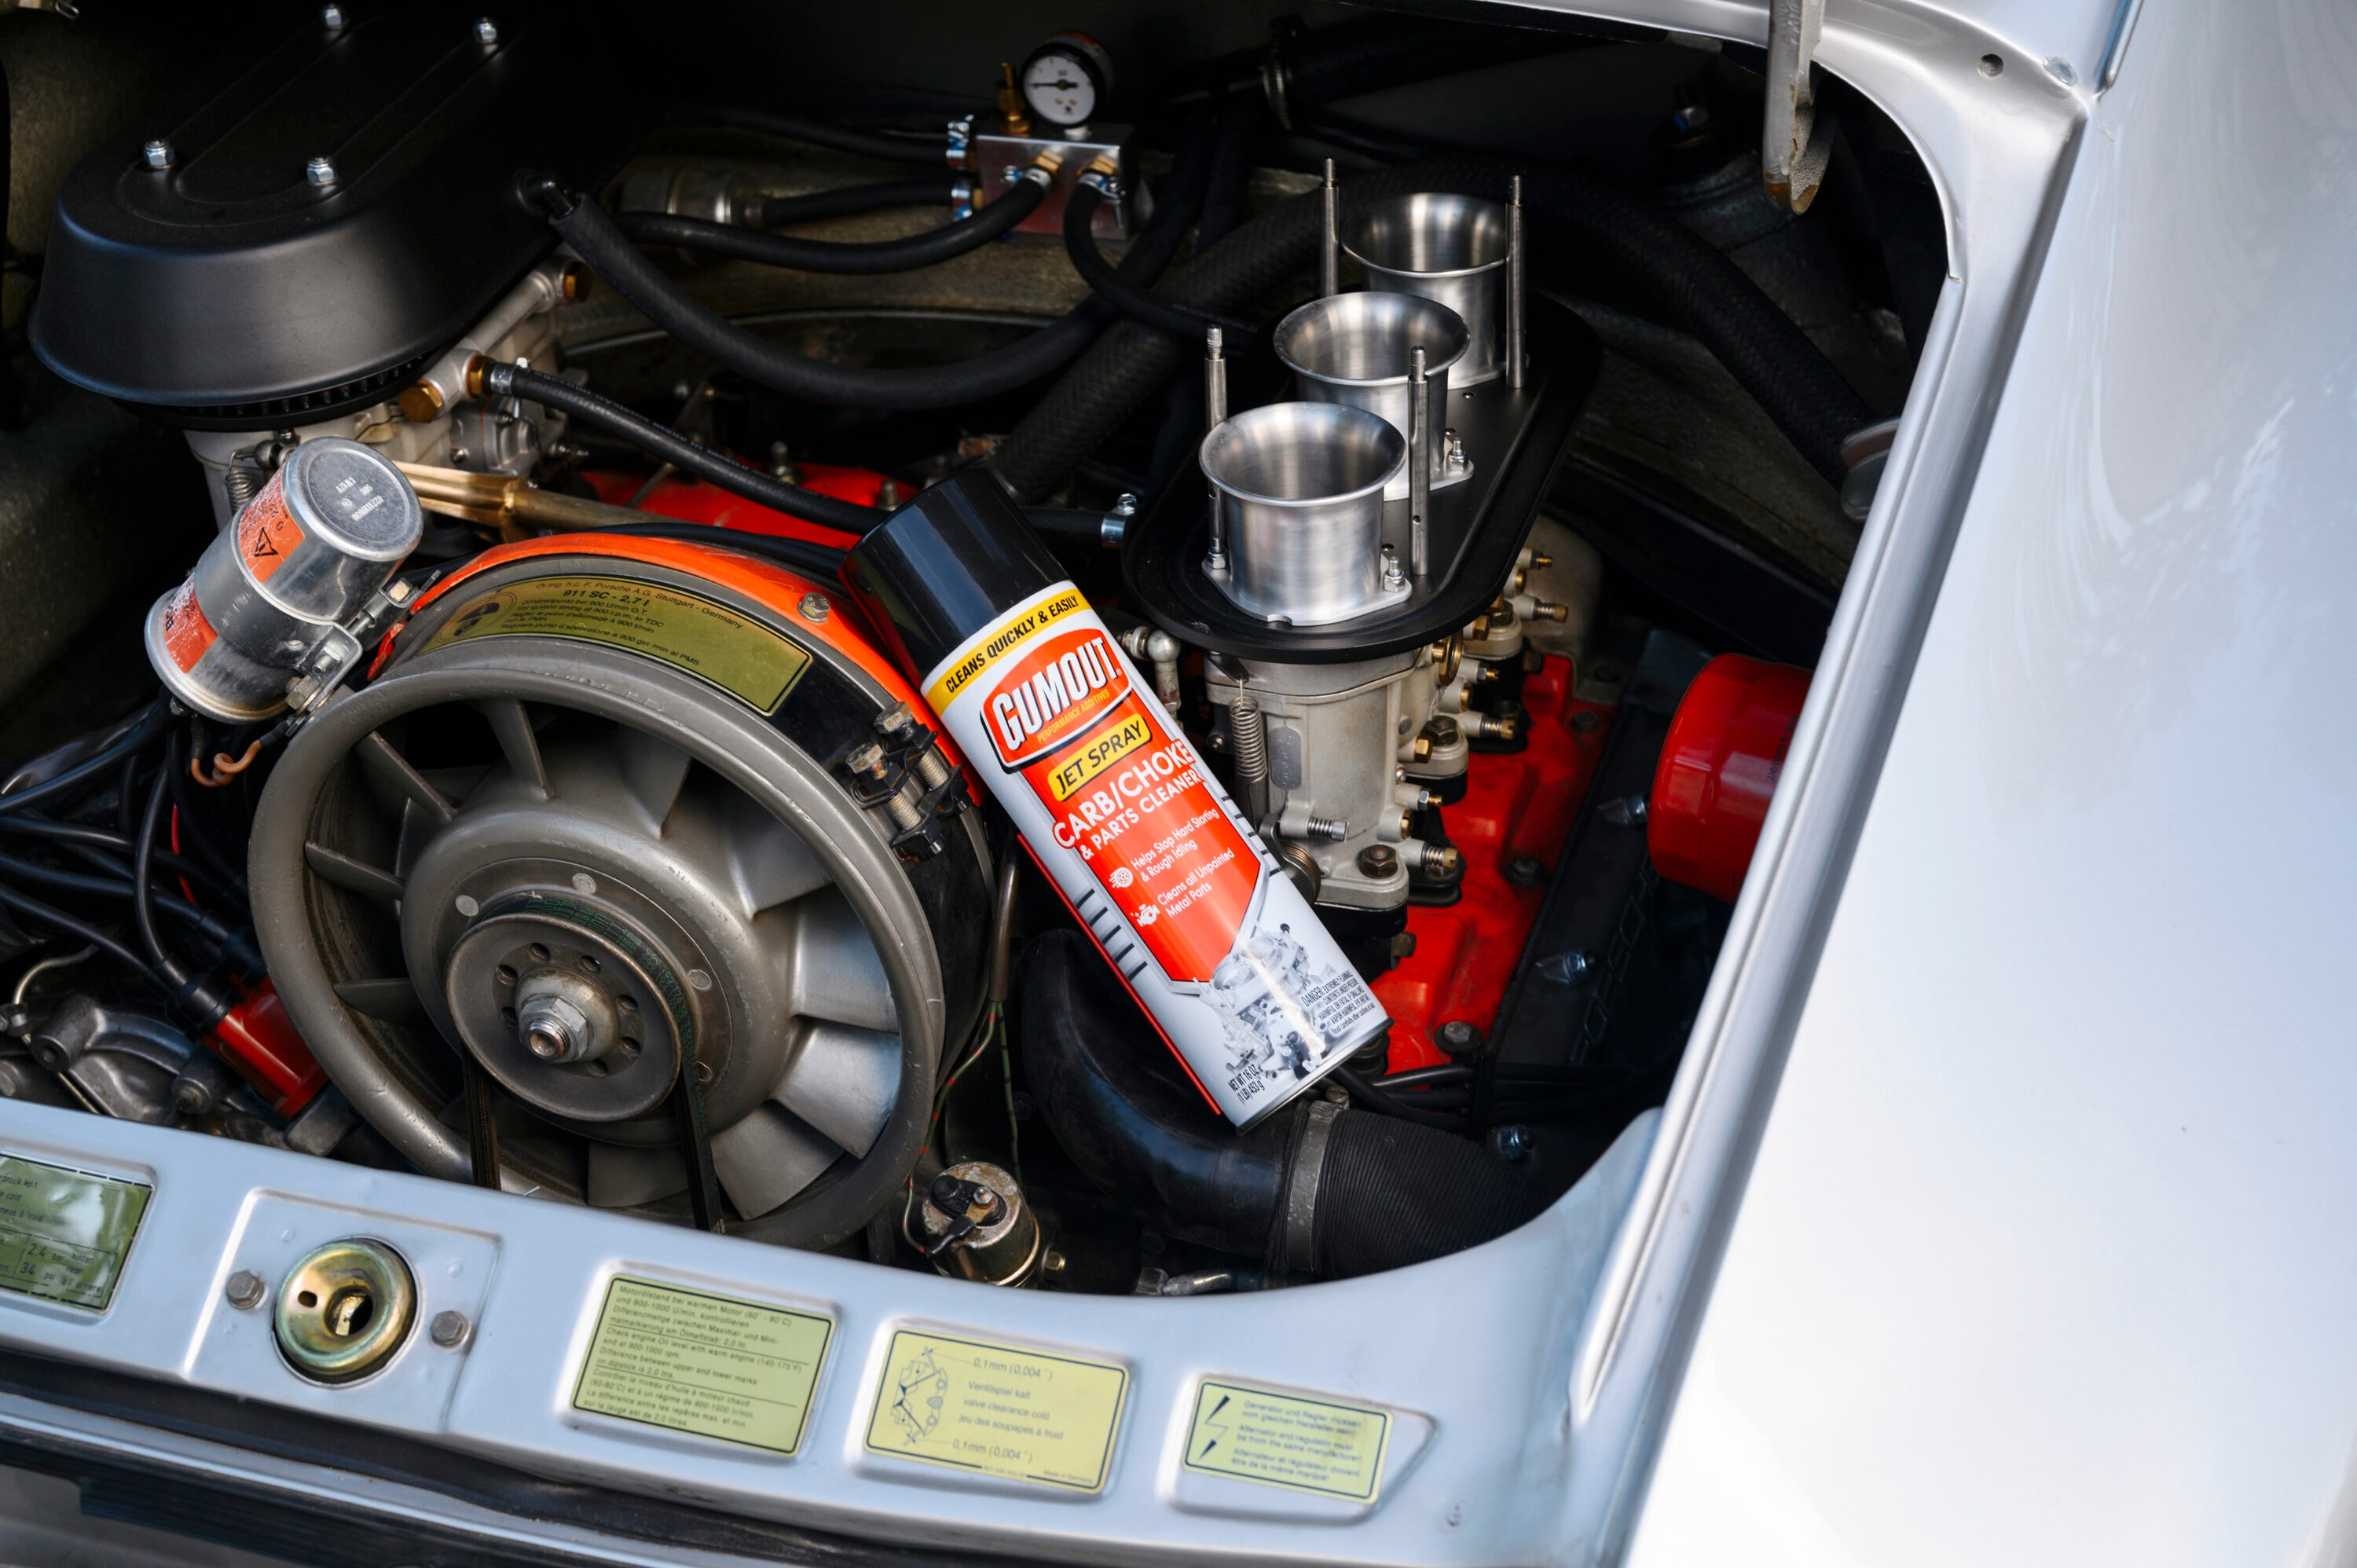 EkoPower car shinner spray cleaner for exterior parts 450ml